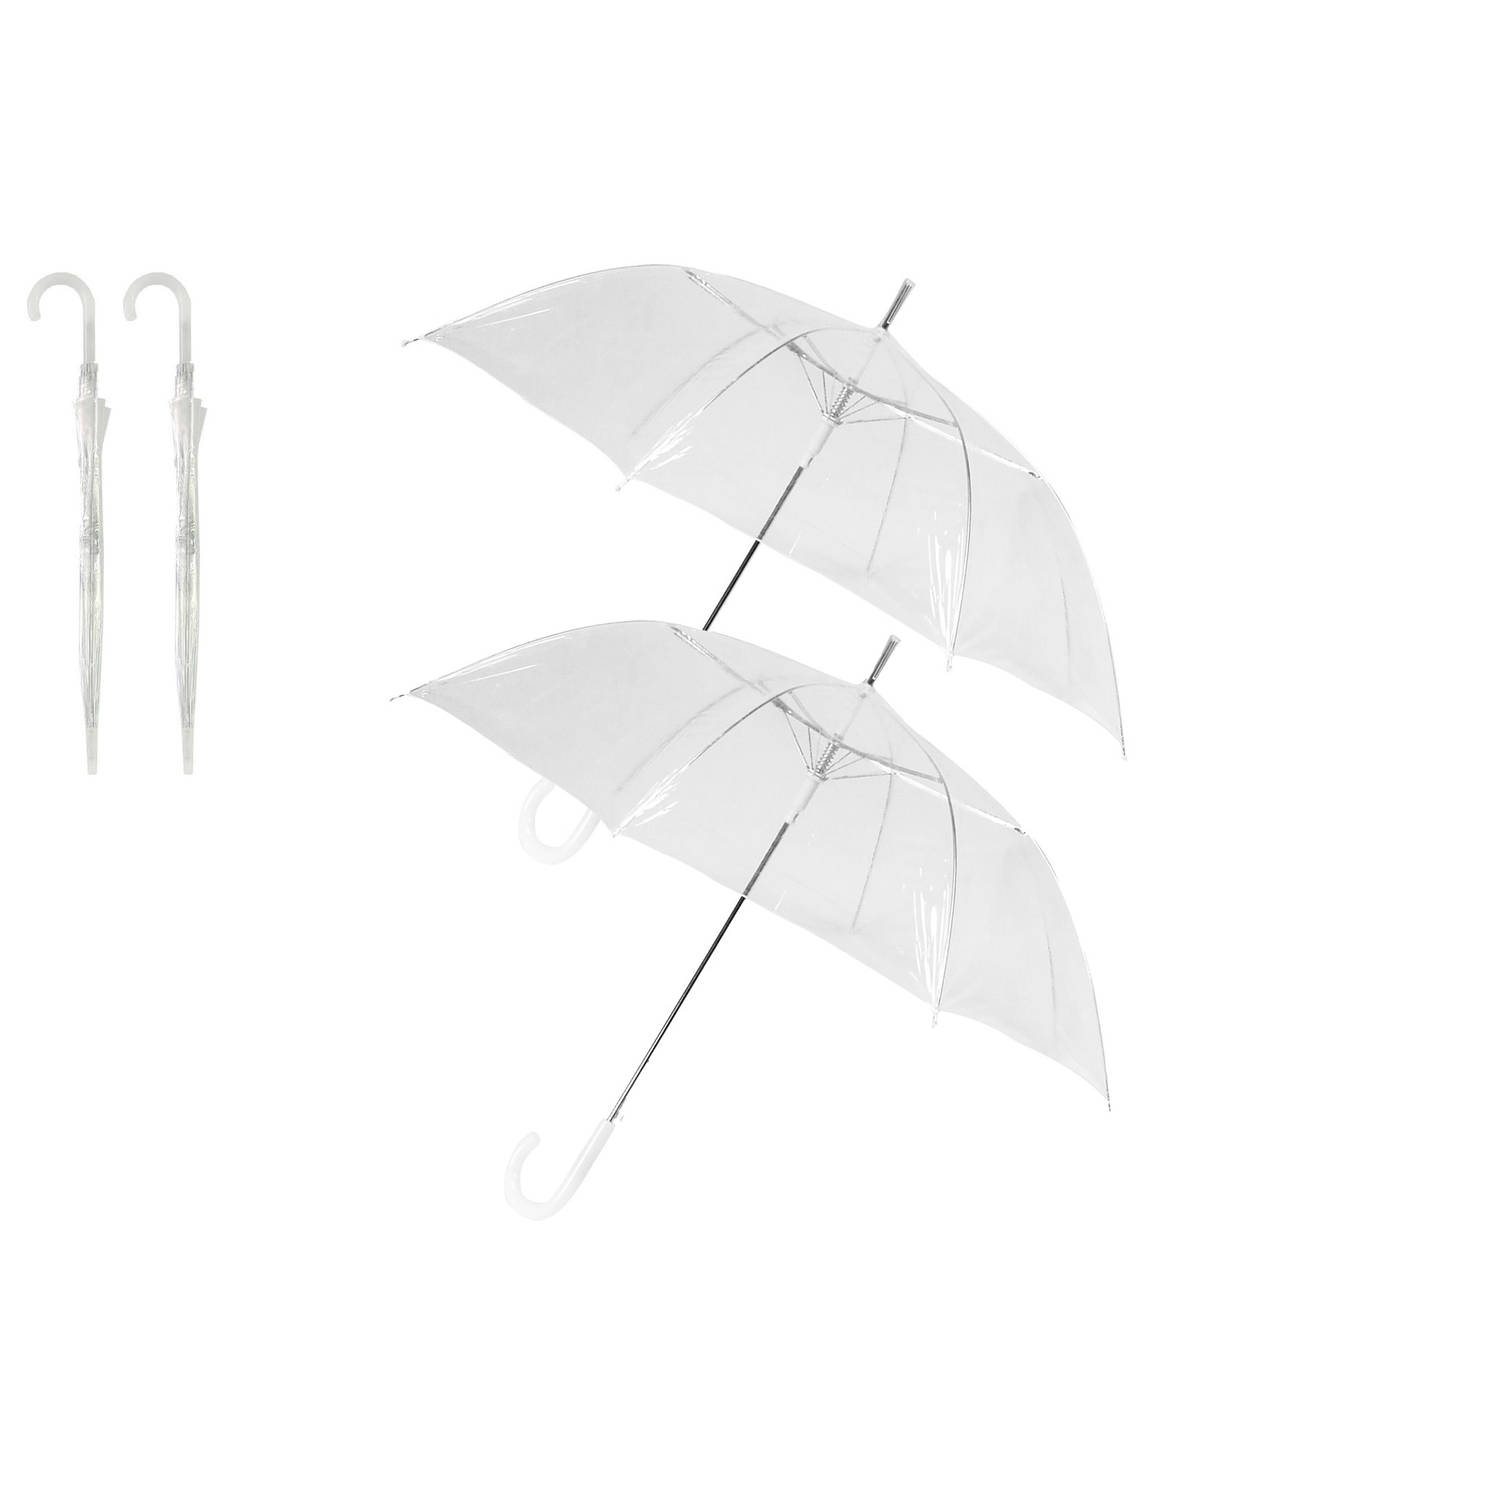 2x Transparant plastic paraplu 102 cm - doorzichtige paraplu - trouwparaplu - bruidsparaplu - stijlvol - bruiloft -